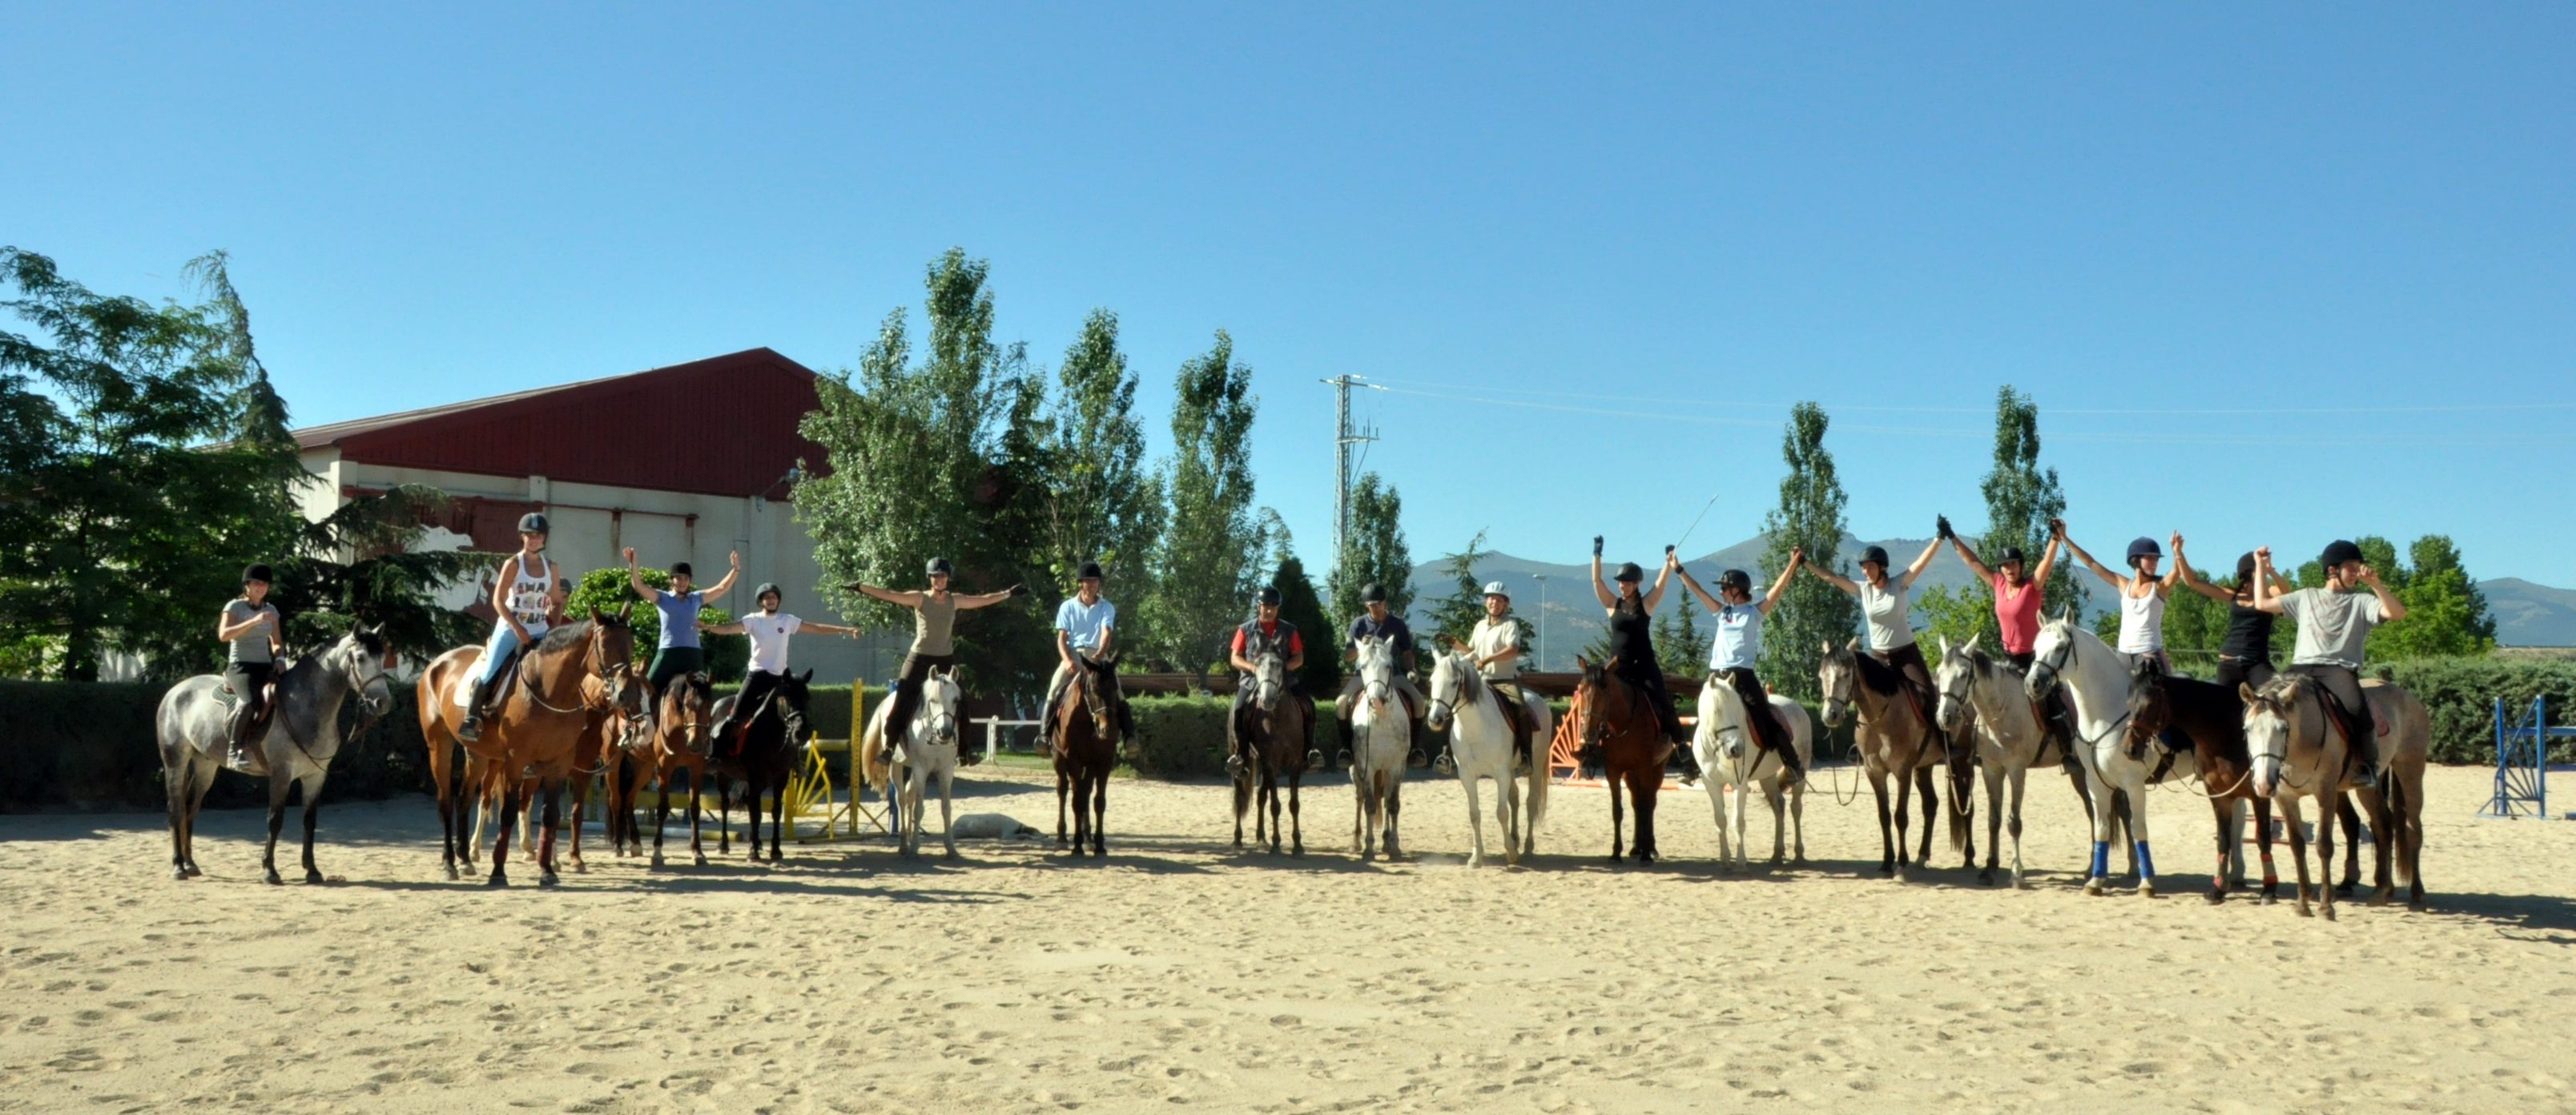 La Escuela Segoviana de Equitación se prepara para iniciar el curso 2016/17